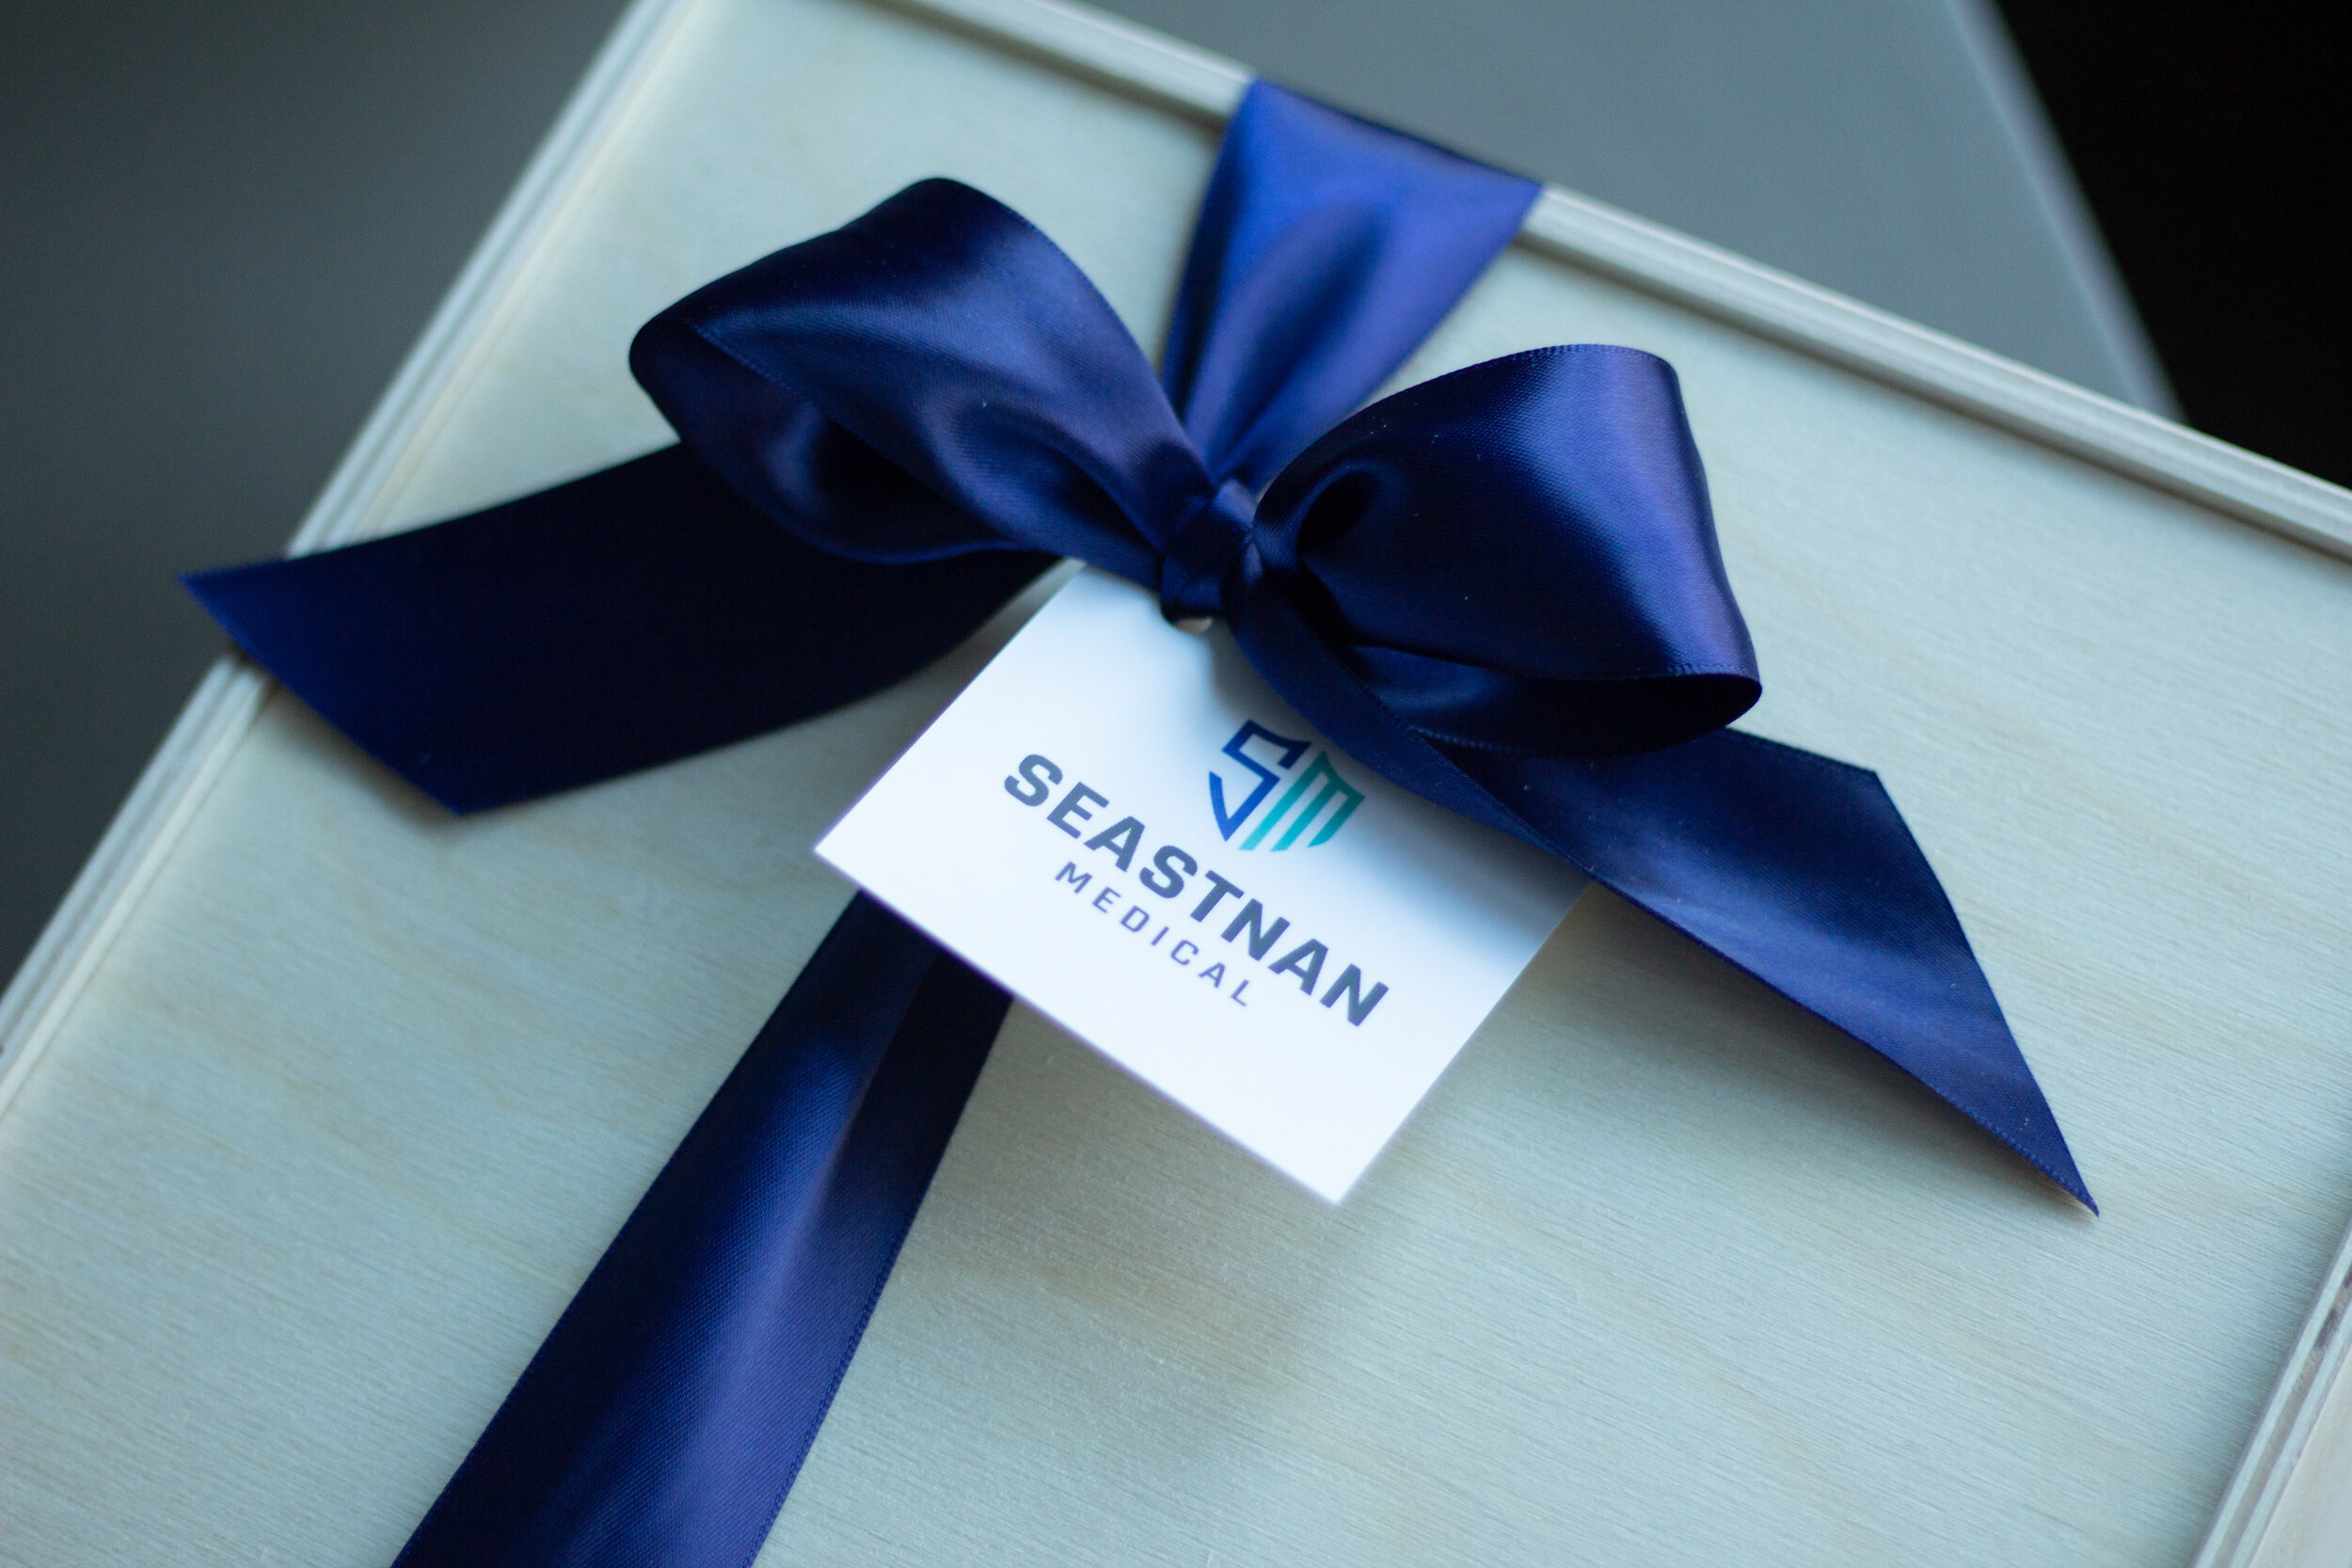 Seastnan 2019 Holiday Client Appreciation 